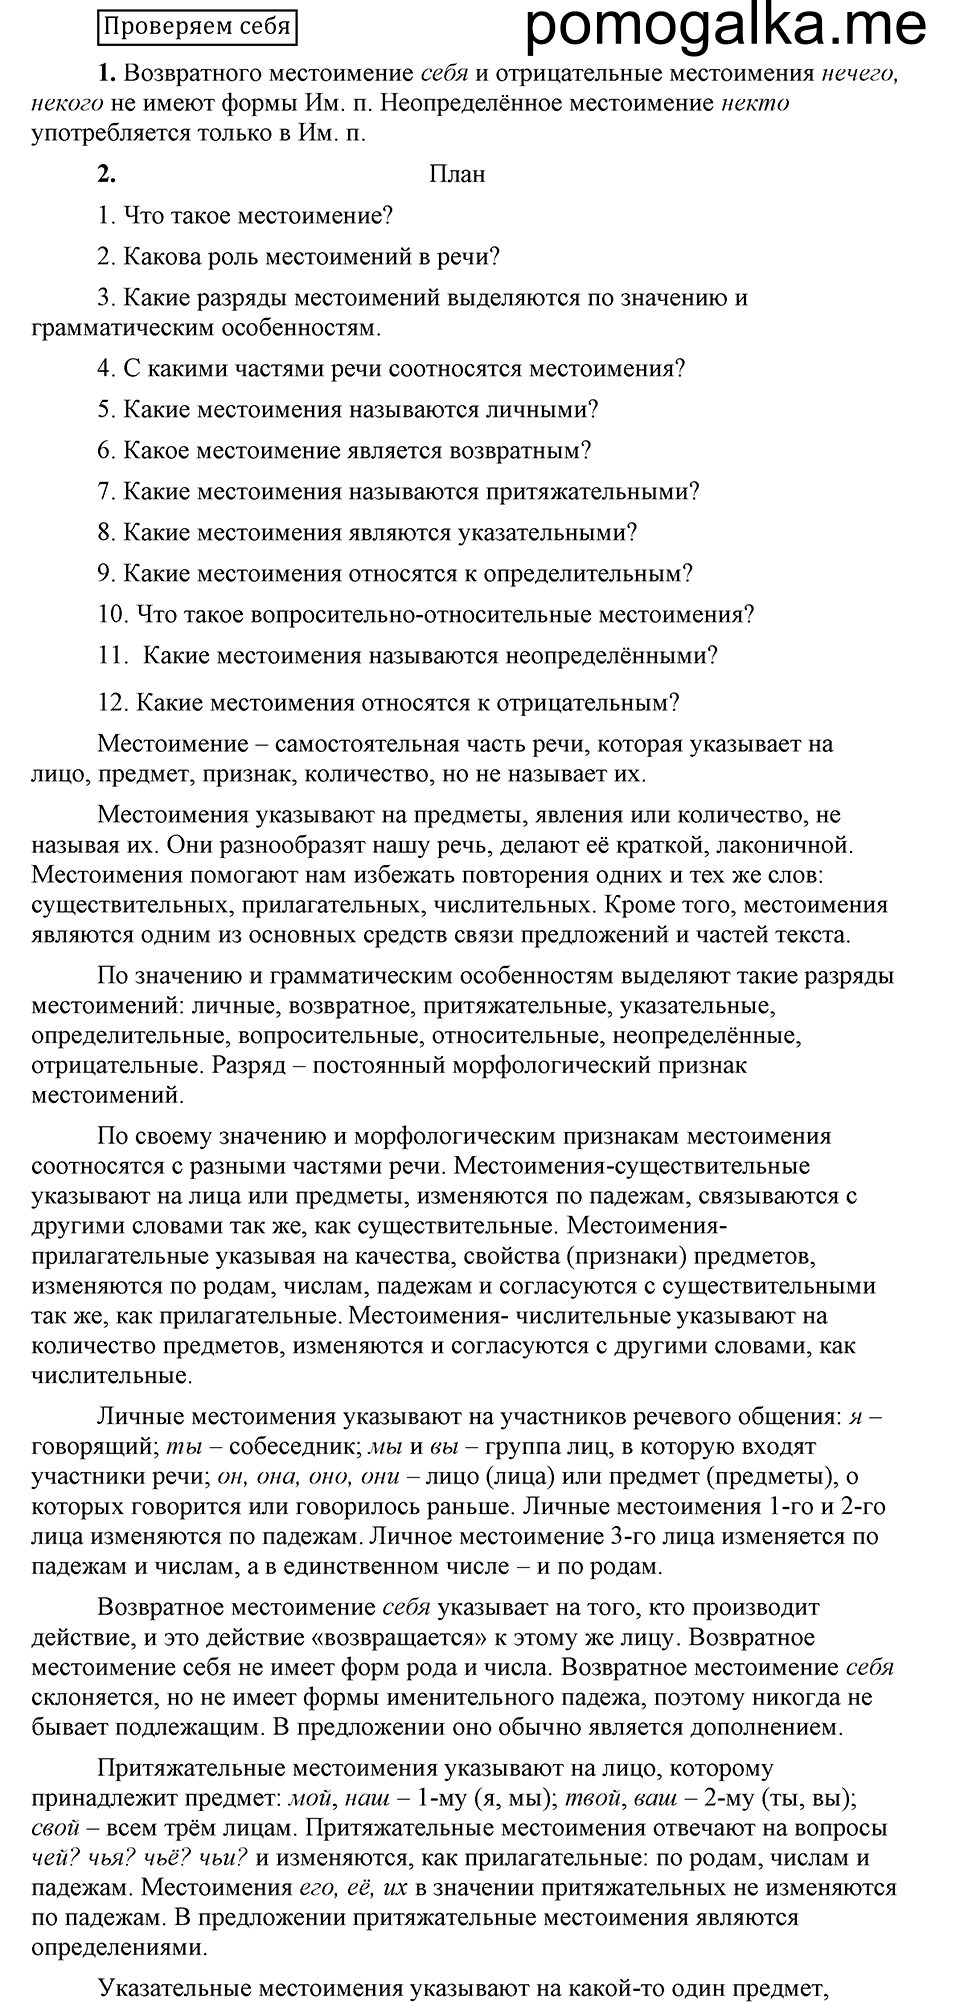 Страница 52, Проверяем себя, русский язык 6 класс Быстрова, Кибирева 2 часть 2019 год